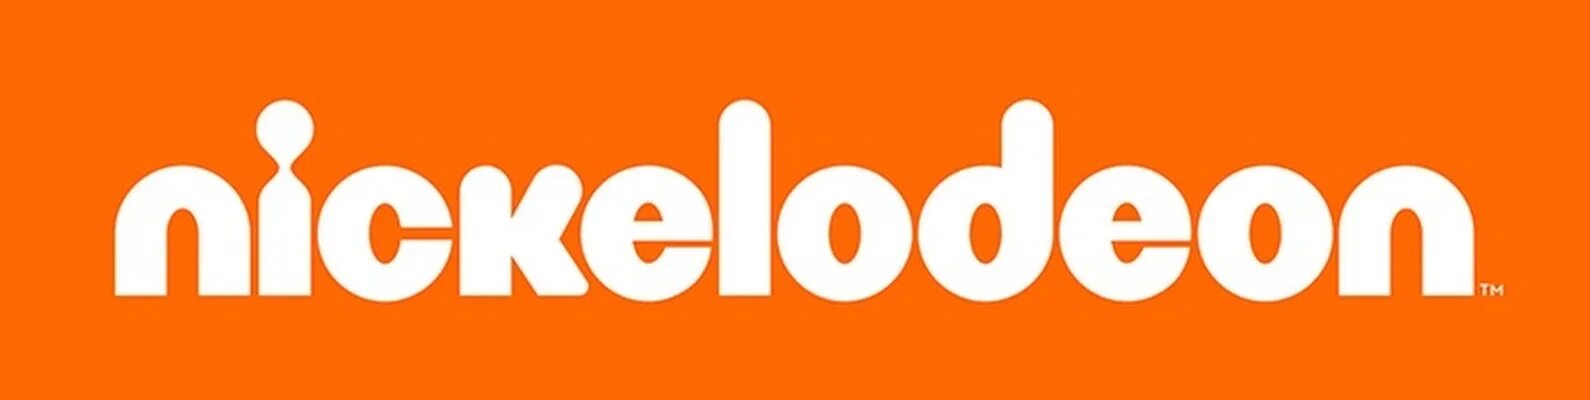 Никелодеон. Канал Nickelodeon. Телеканал Nickelodeon логотип. Телеканал никелодеон